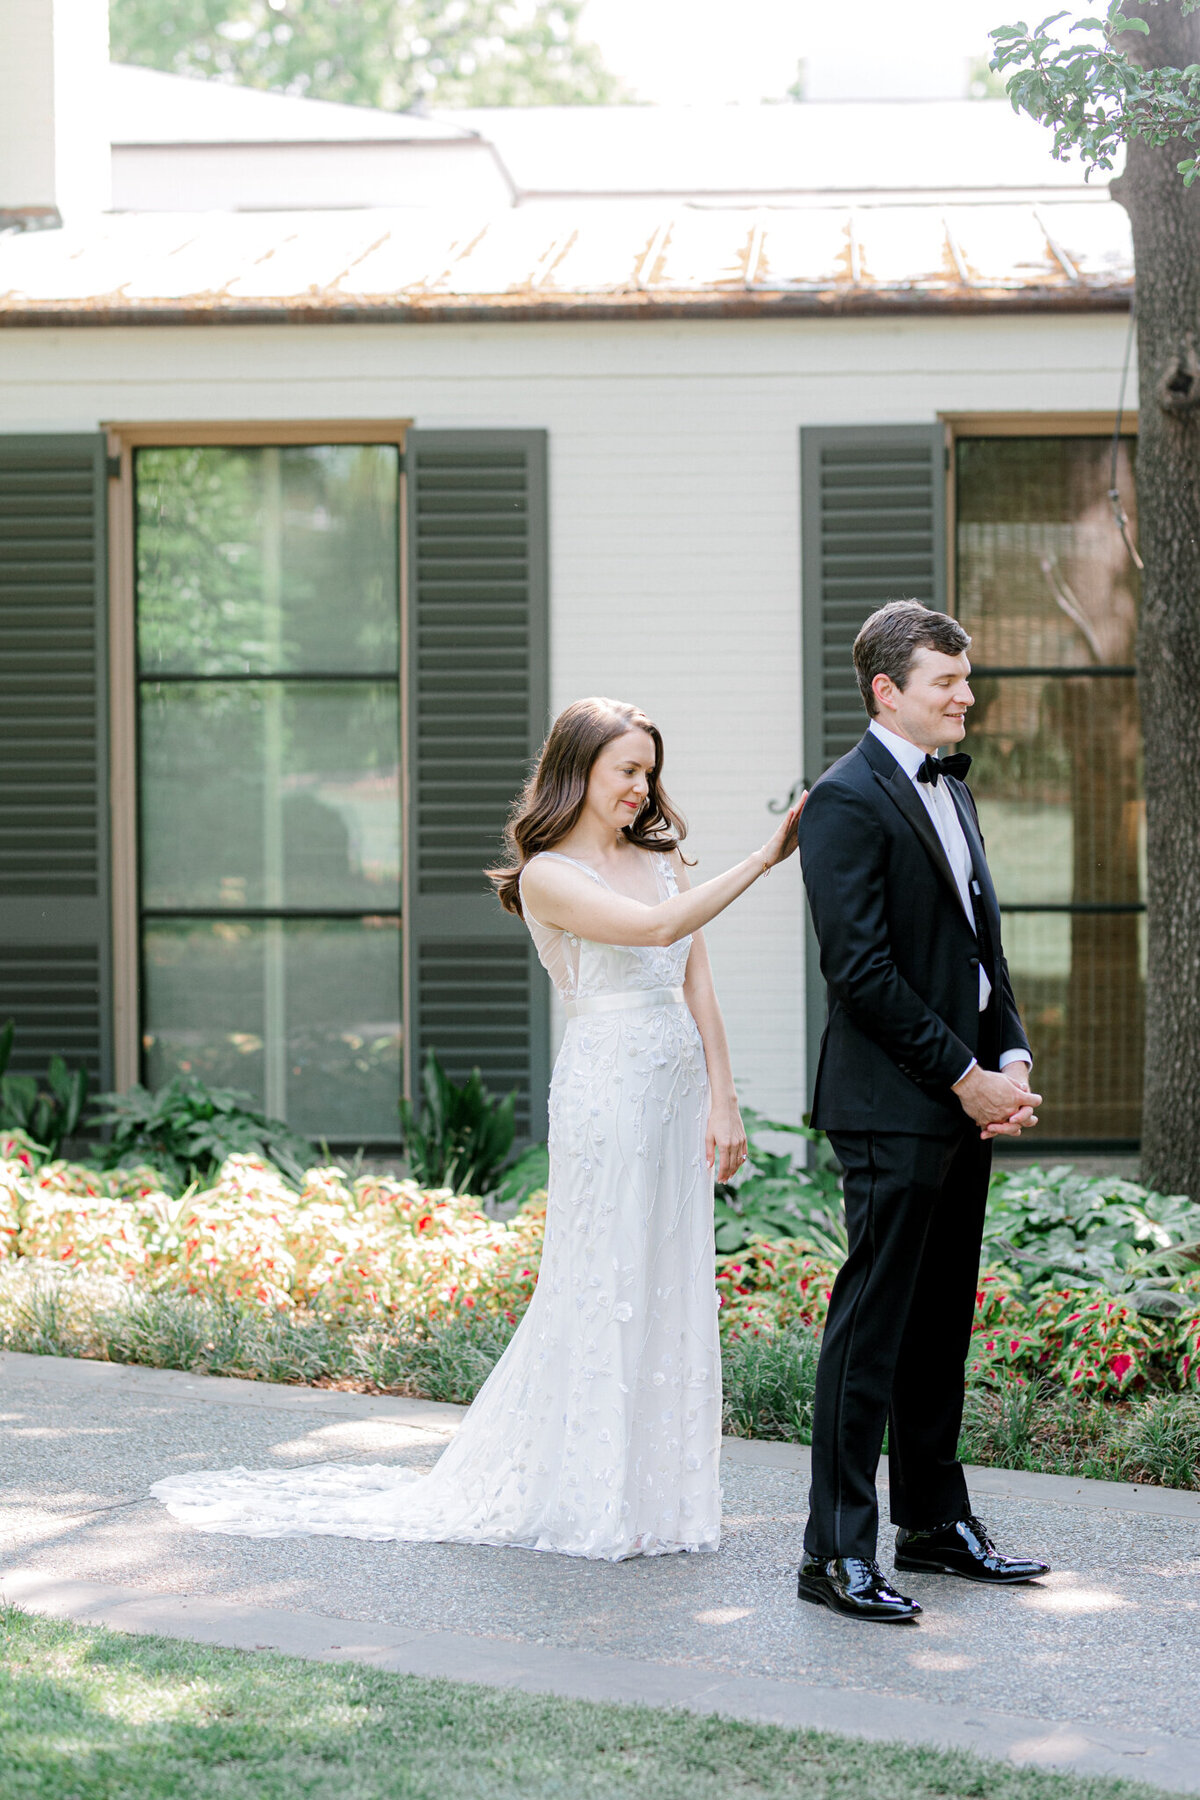 Gena & Matt's Wedding at the Dallas Arboretum | Dallas Wedding Photographer | Sami Kathryn Photography-63